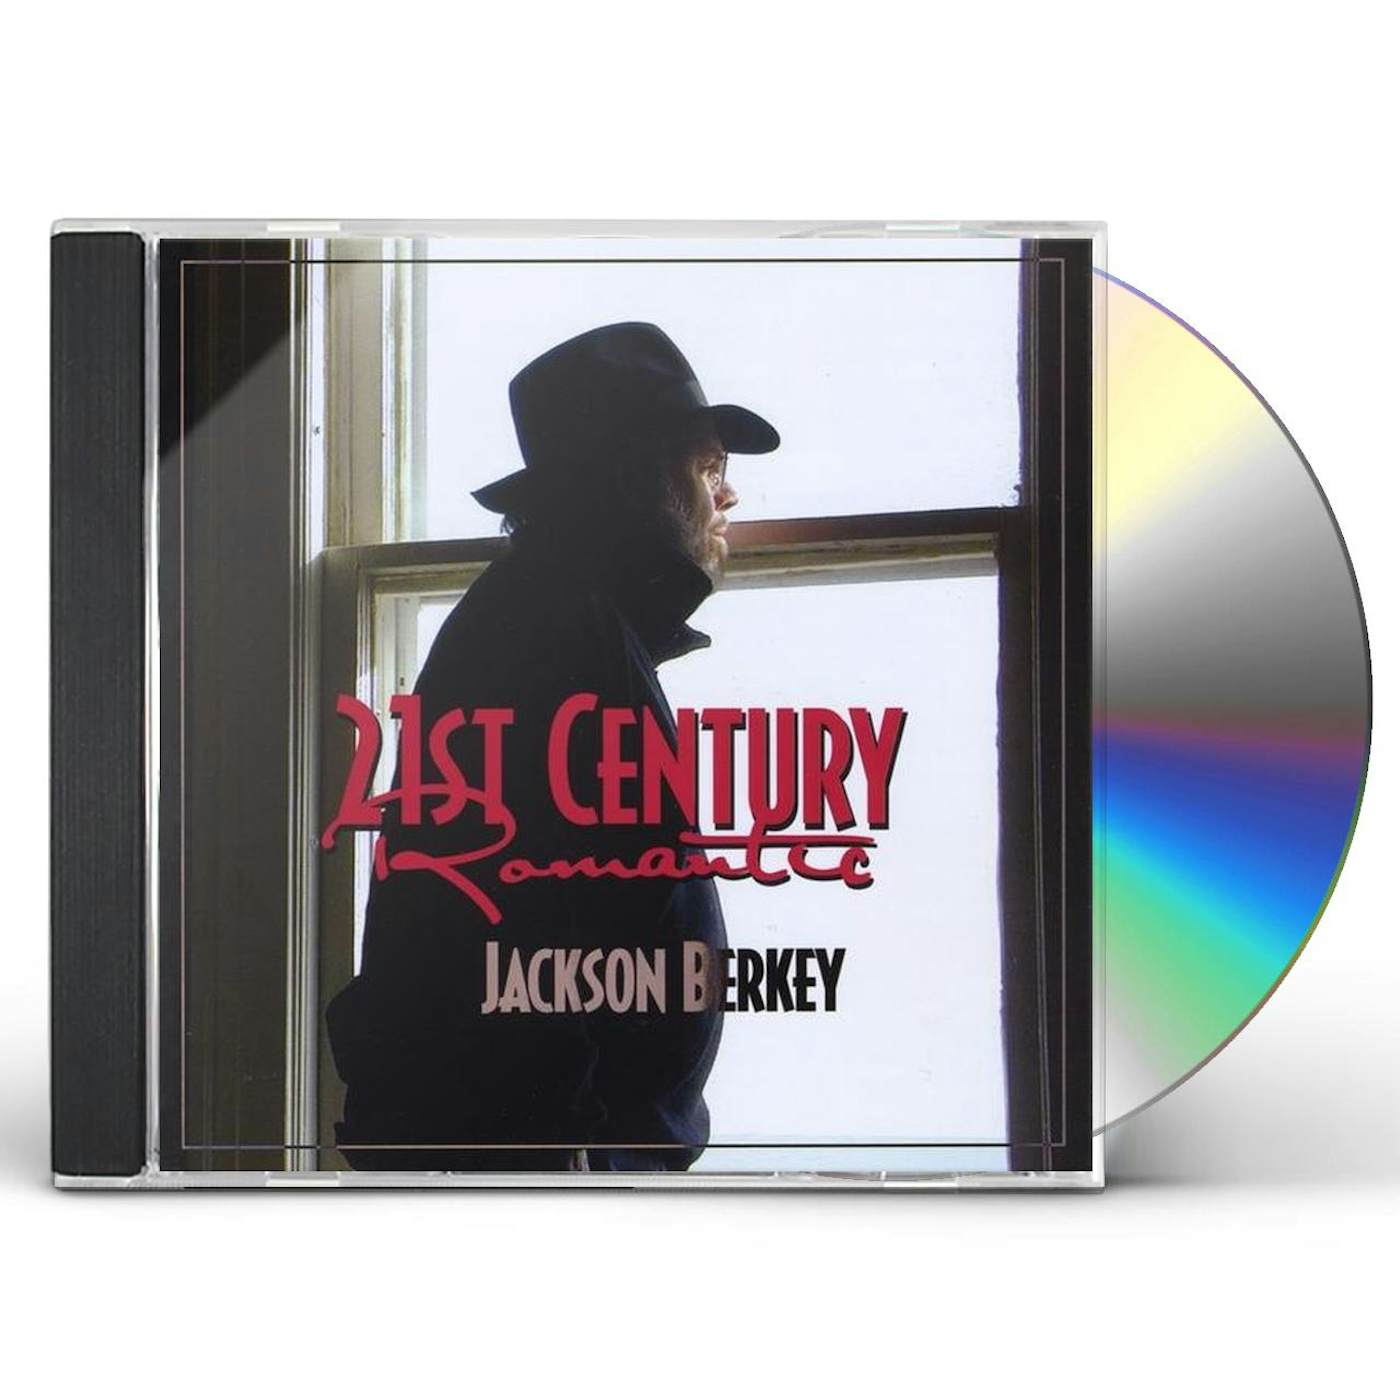 Jackson Berkey 21ST CENTURY ROMANTIC CD